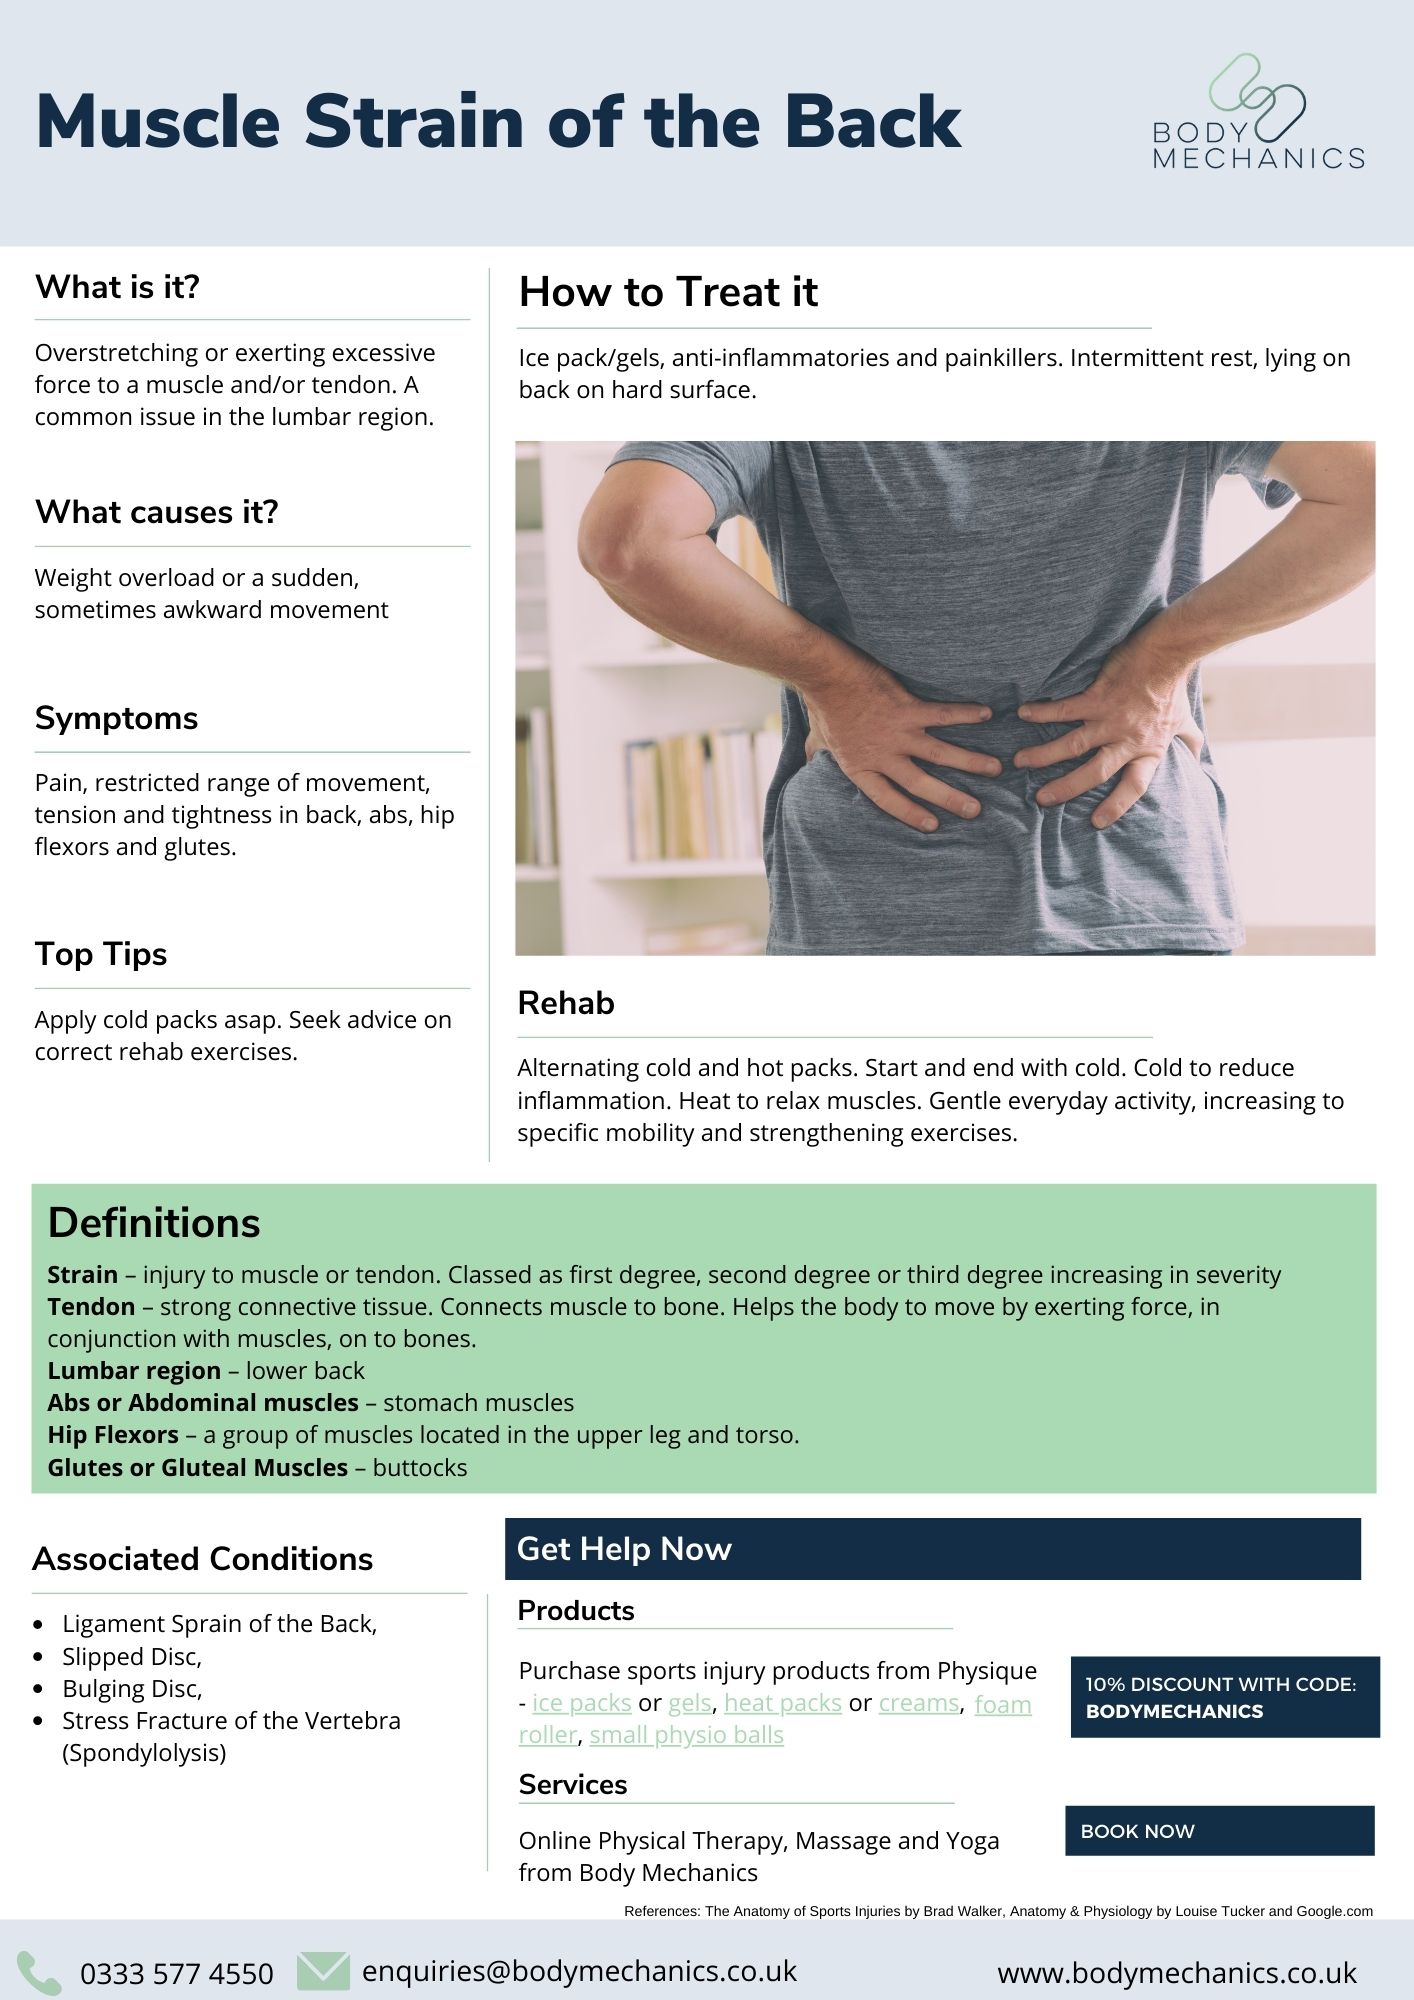 Muscle Strain of the Back Infosheet